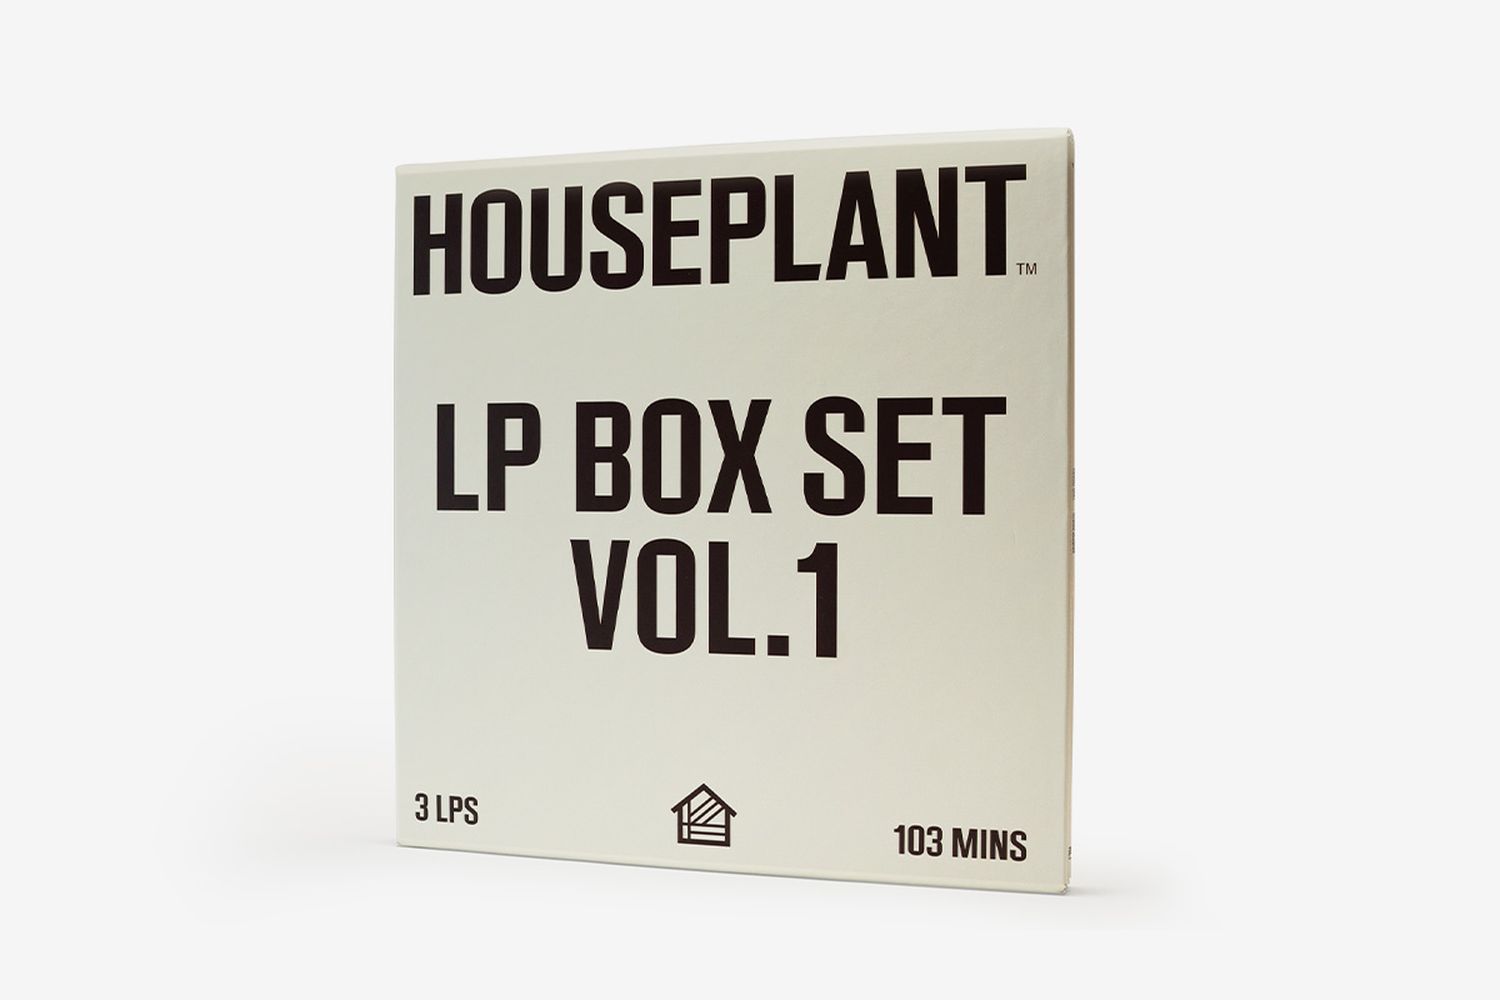 Vinyl Box Set